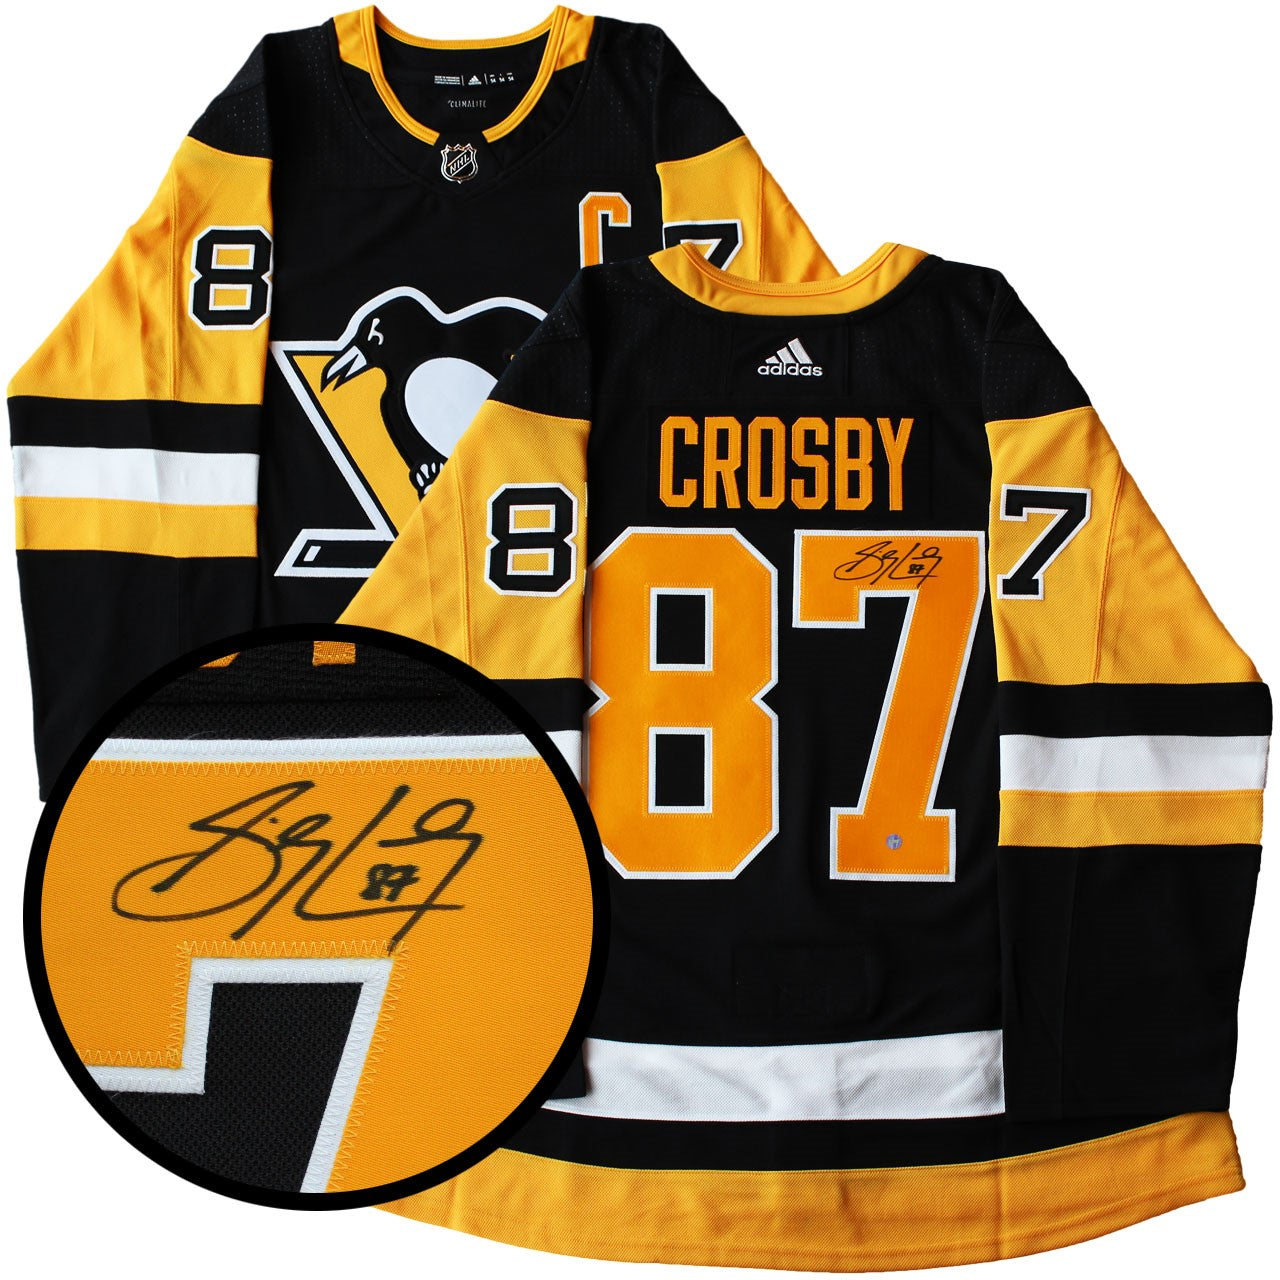 Sidney Crosby Autographed Memorabilia